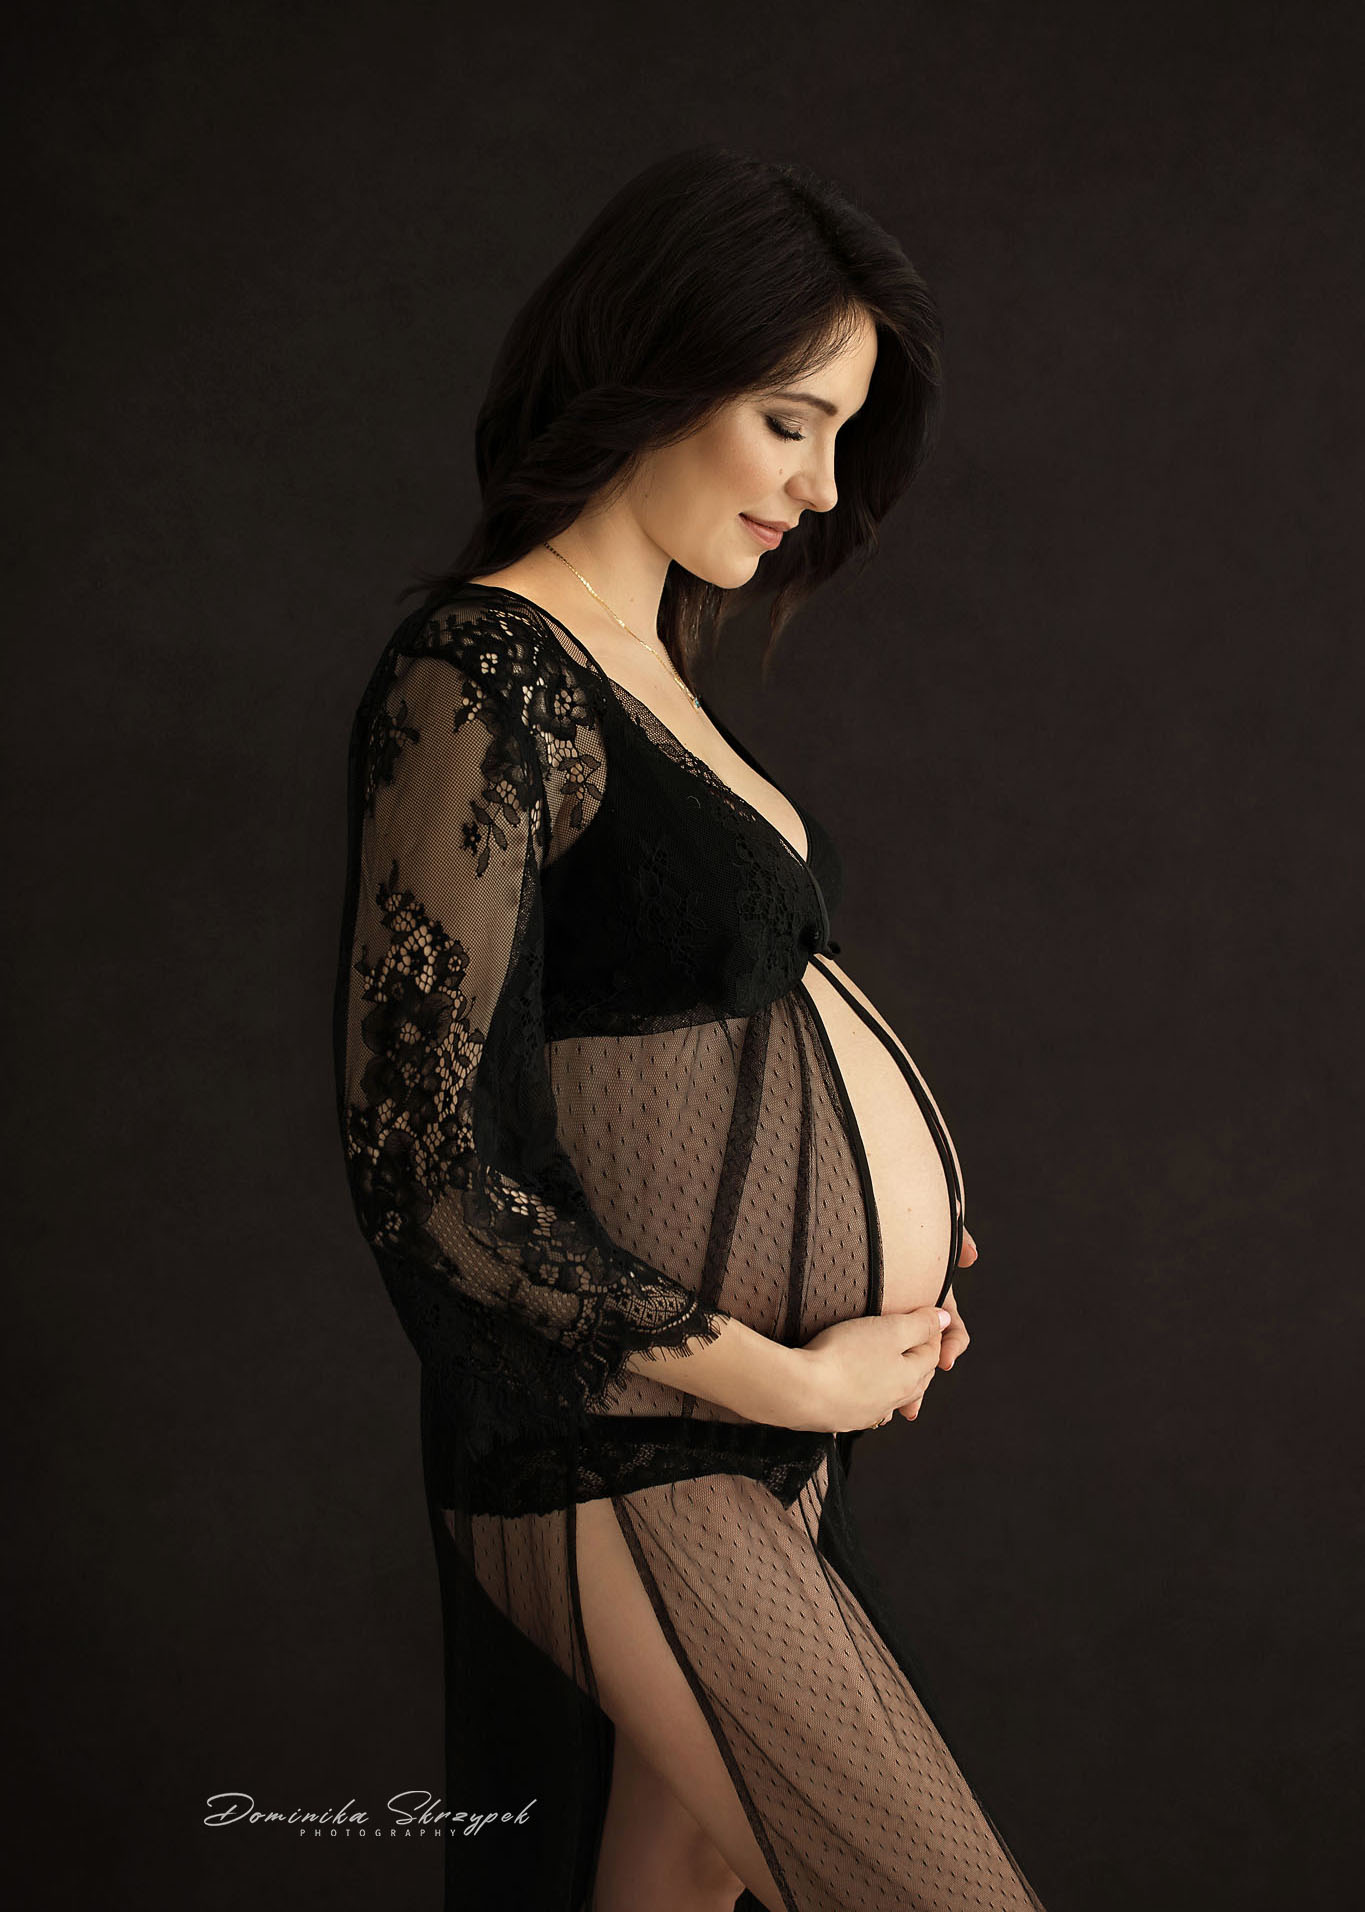 zmysłowe zdjęcia ciążowe, fotografia brzuszkowa warszawa